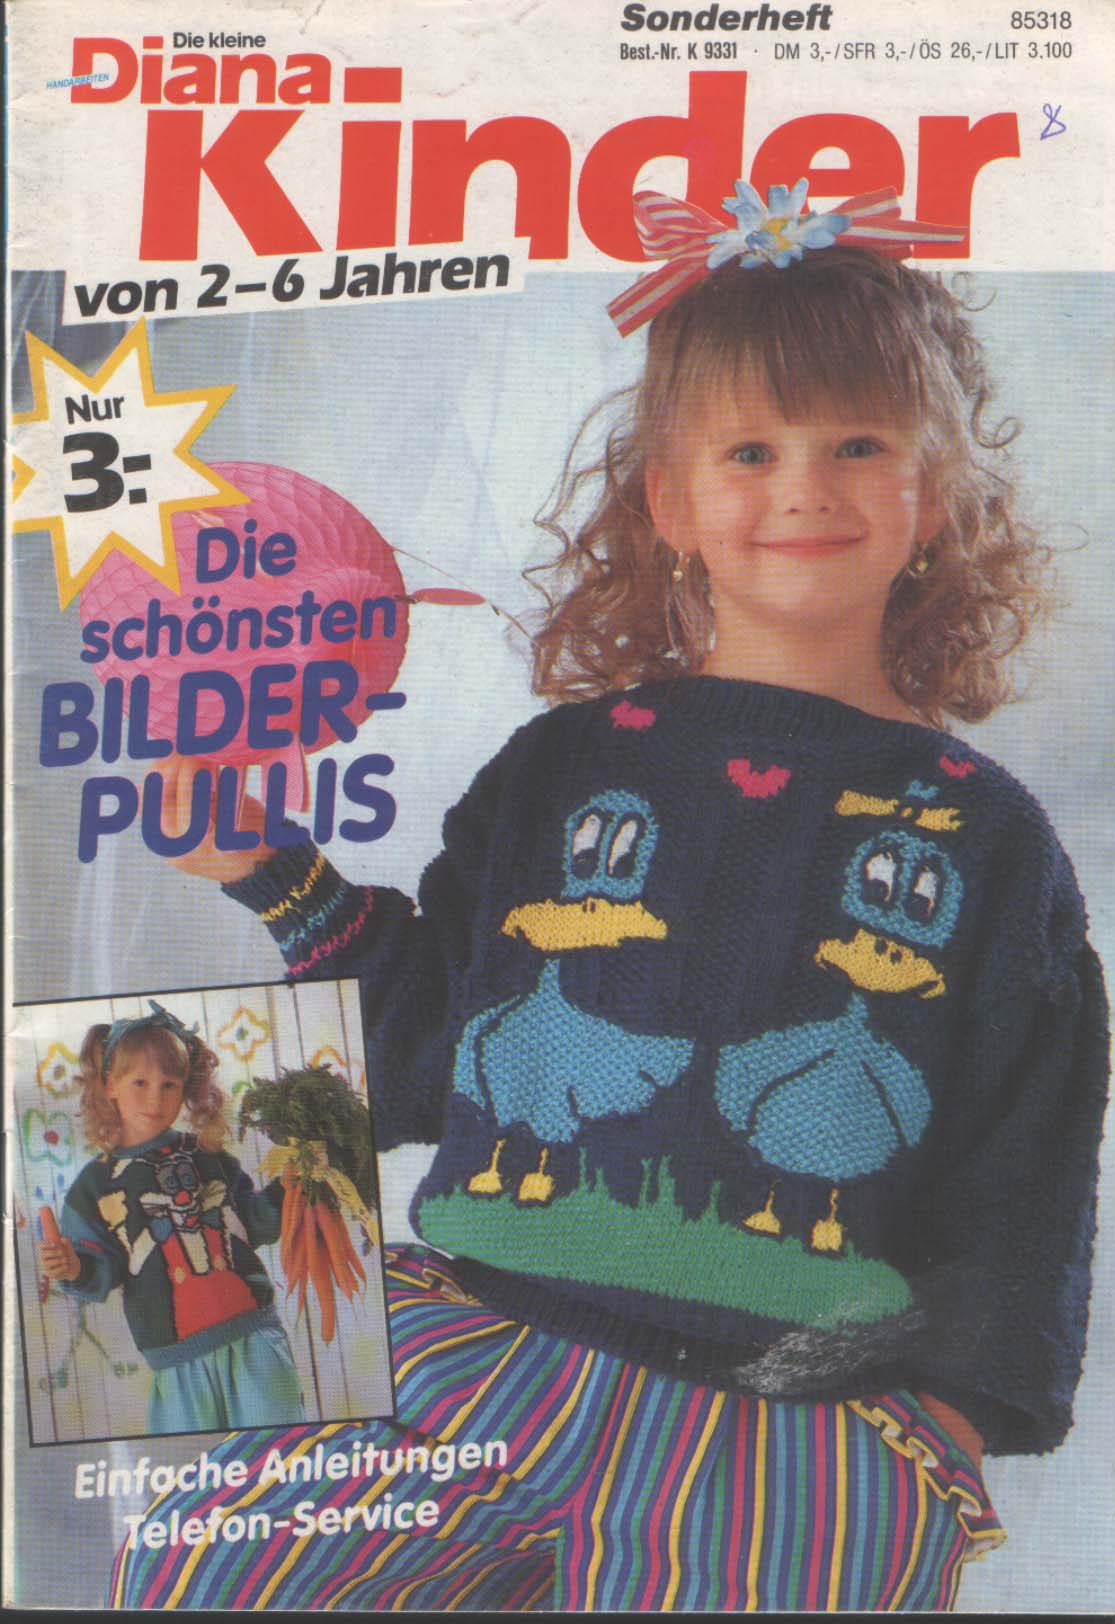 Kind magazine. Немецкие детские журналы. Немецкие журналы детства. Детям Германии журналы.